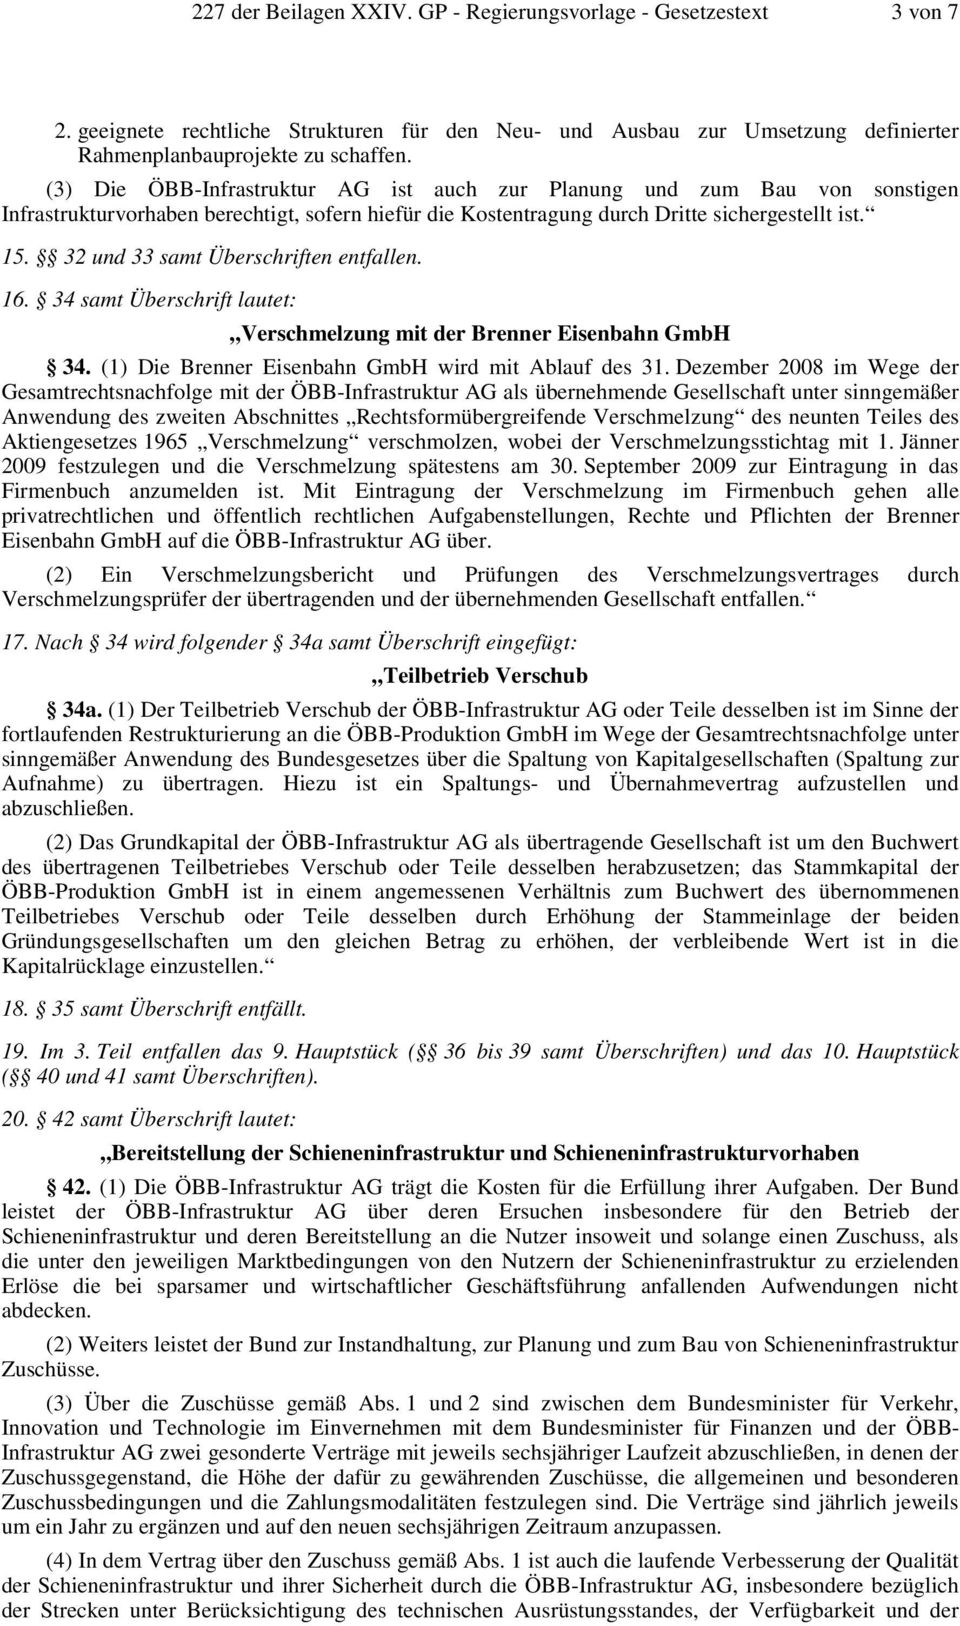 32 und 33 samt Überschriften entfallen. 16. 34 samt Überschrift lautet: Verschmelzung mit der Brenner Eisenbahn GmbH 34. (1) Die Brenner Eisenbahn GmbH wird mit Ablauf des 31.